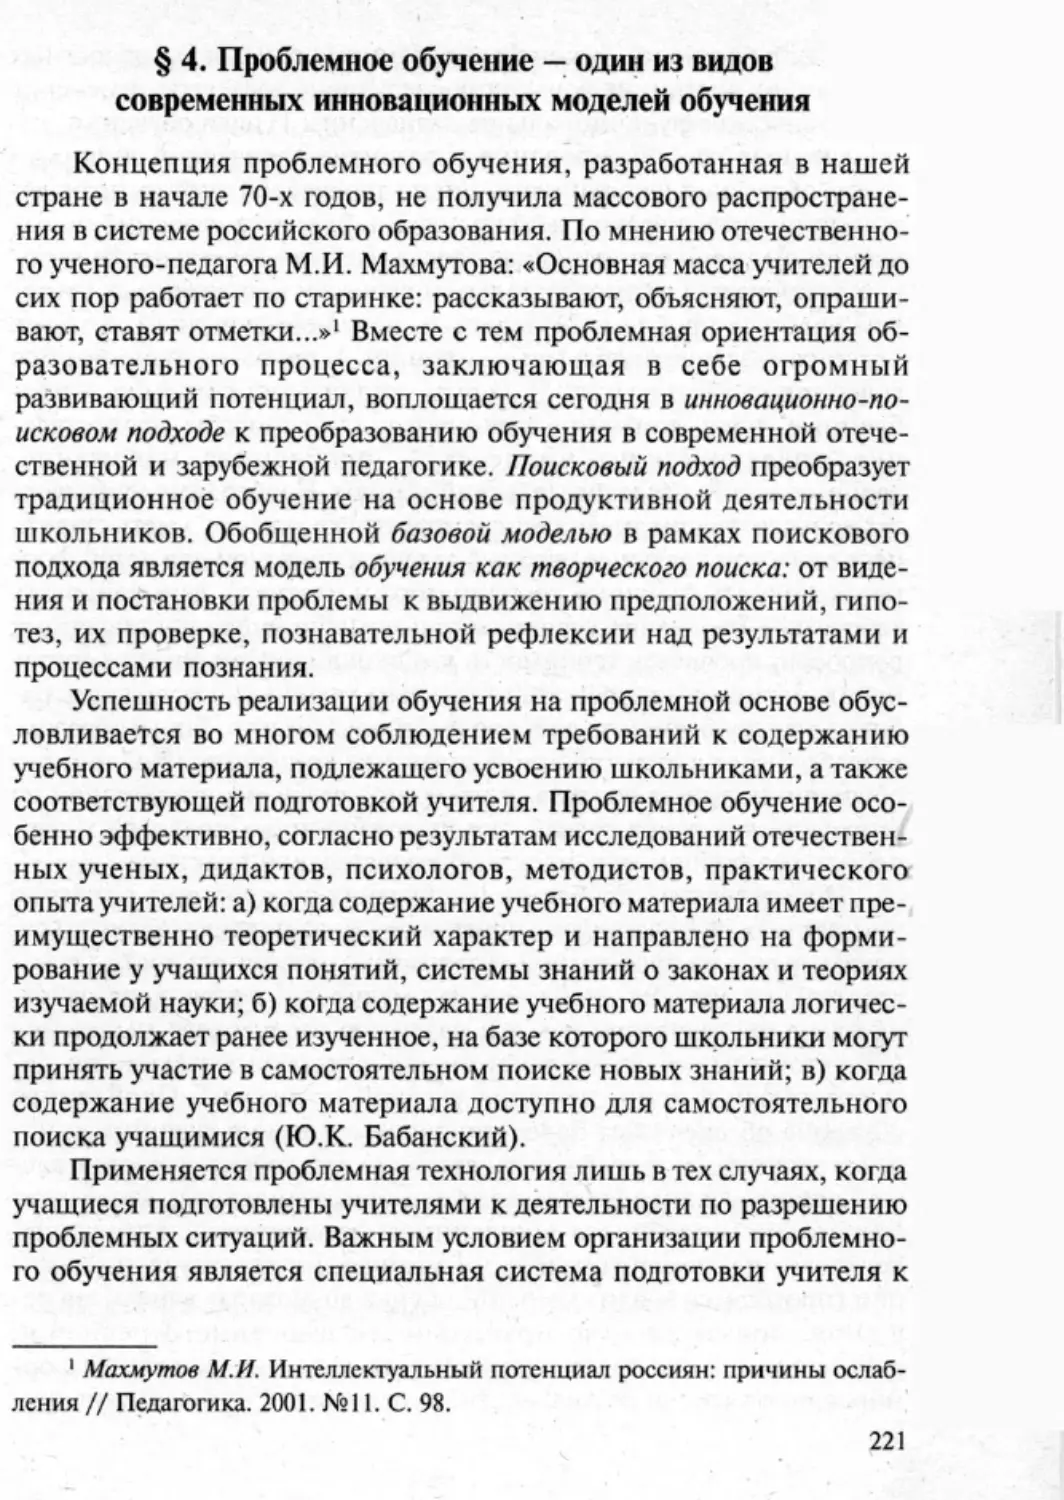 Загрекова Л.В., Николаева В.В - 0222